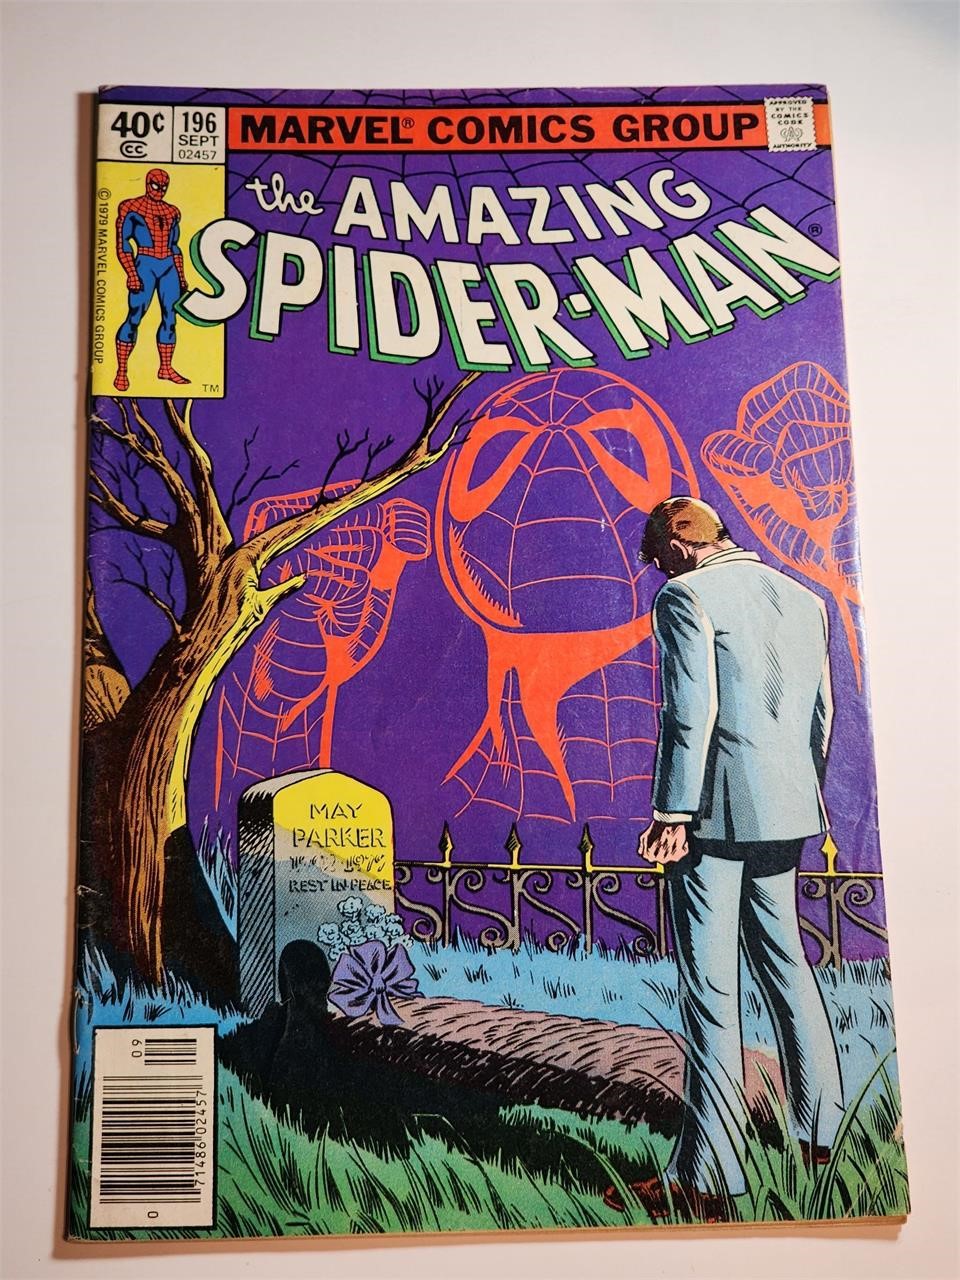 MARVEL COMICS AMAZING SPIDERMAN #196 BRONZE AGE